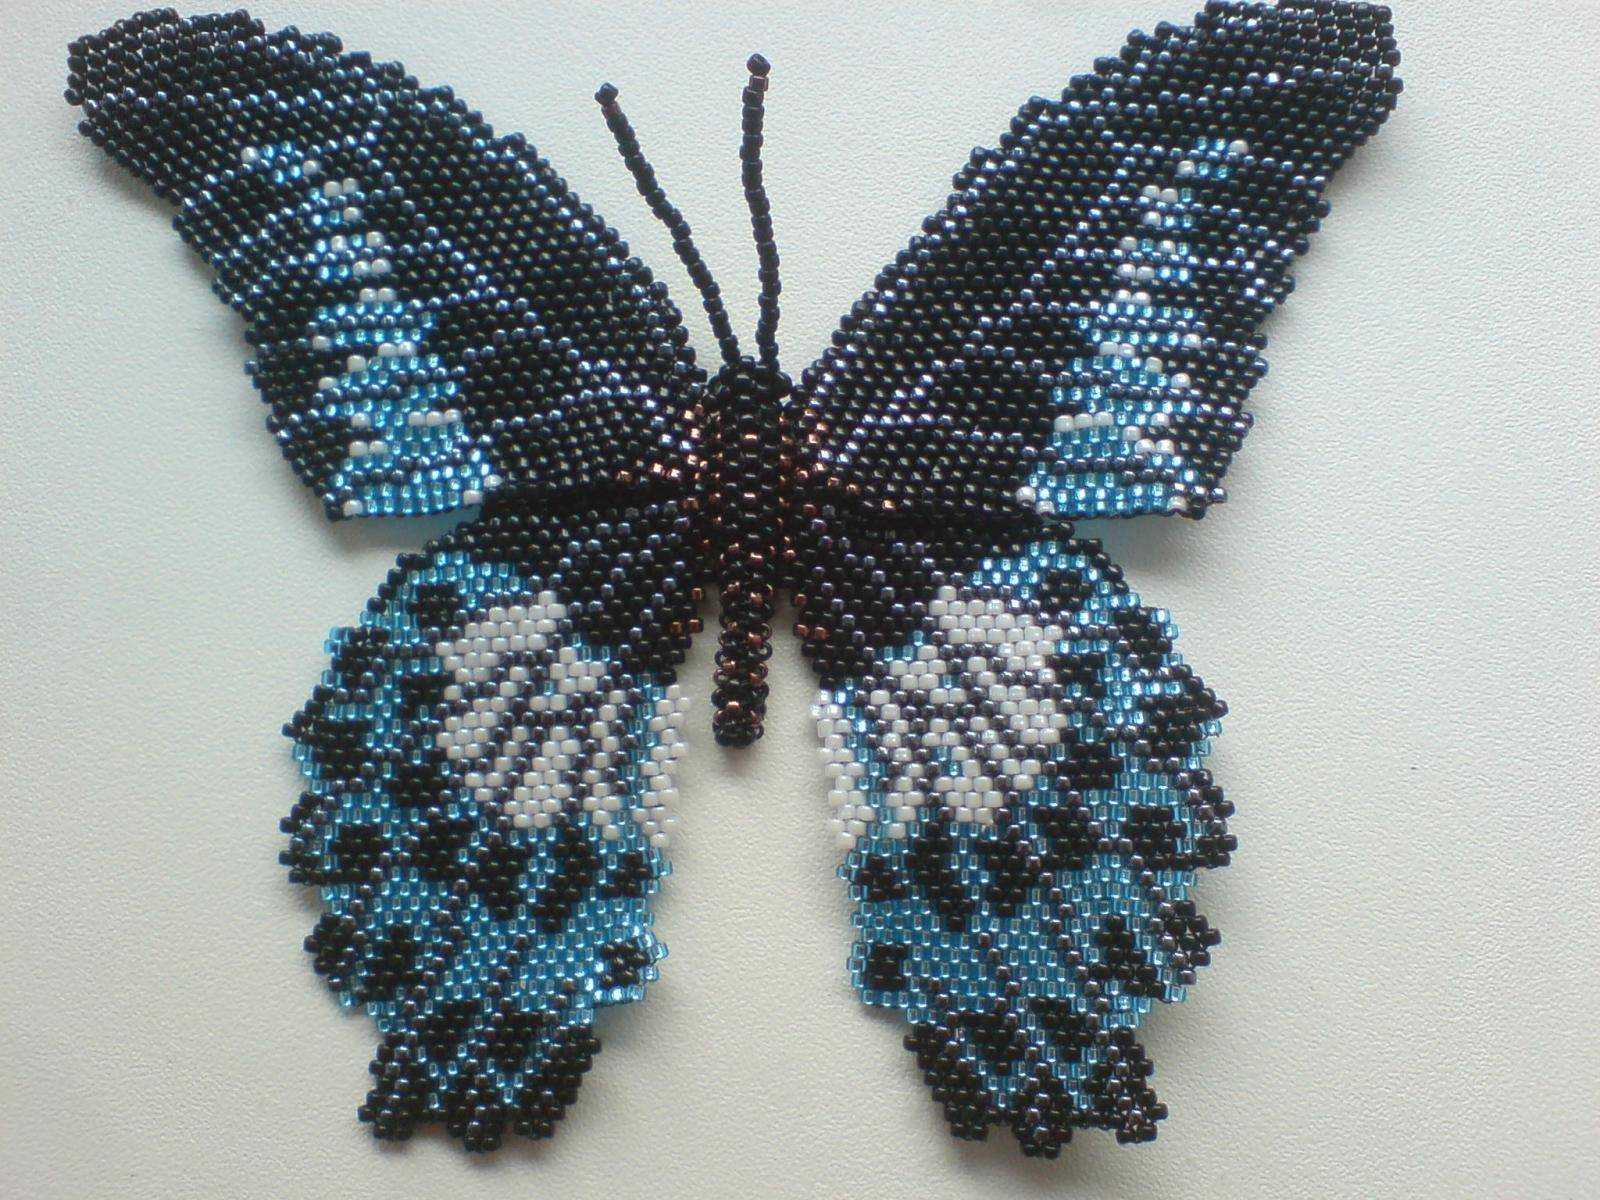 Бабочка из бисера поэтапно: мастер-класс со схемами плетения для начинающих, простые фото уроки с описанием